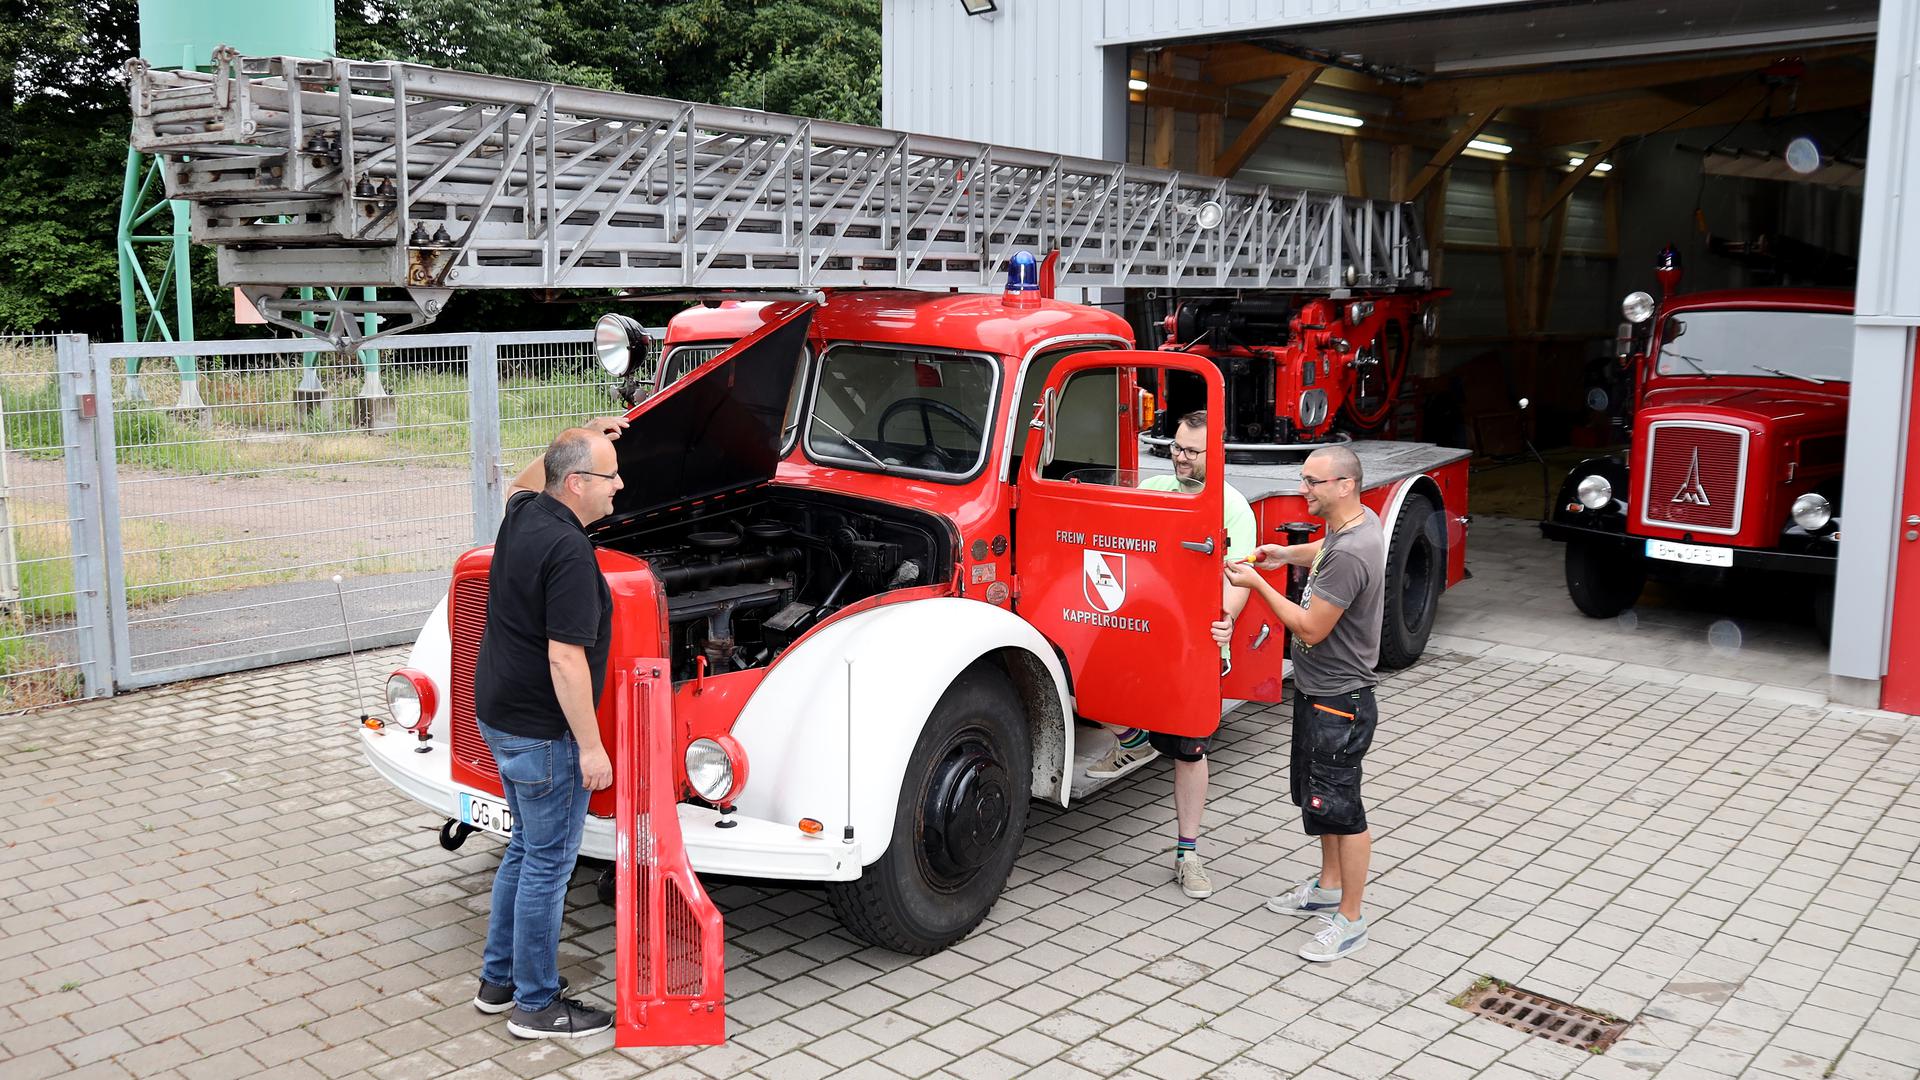 Reportage über die Restaurierung der alten Karlsruher Feuerwehr-Drehleiter von 1943 in Kappelrodeck